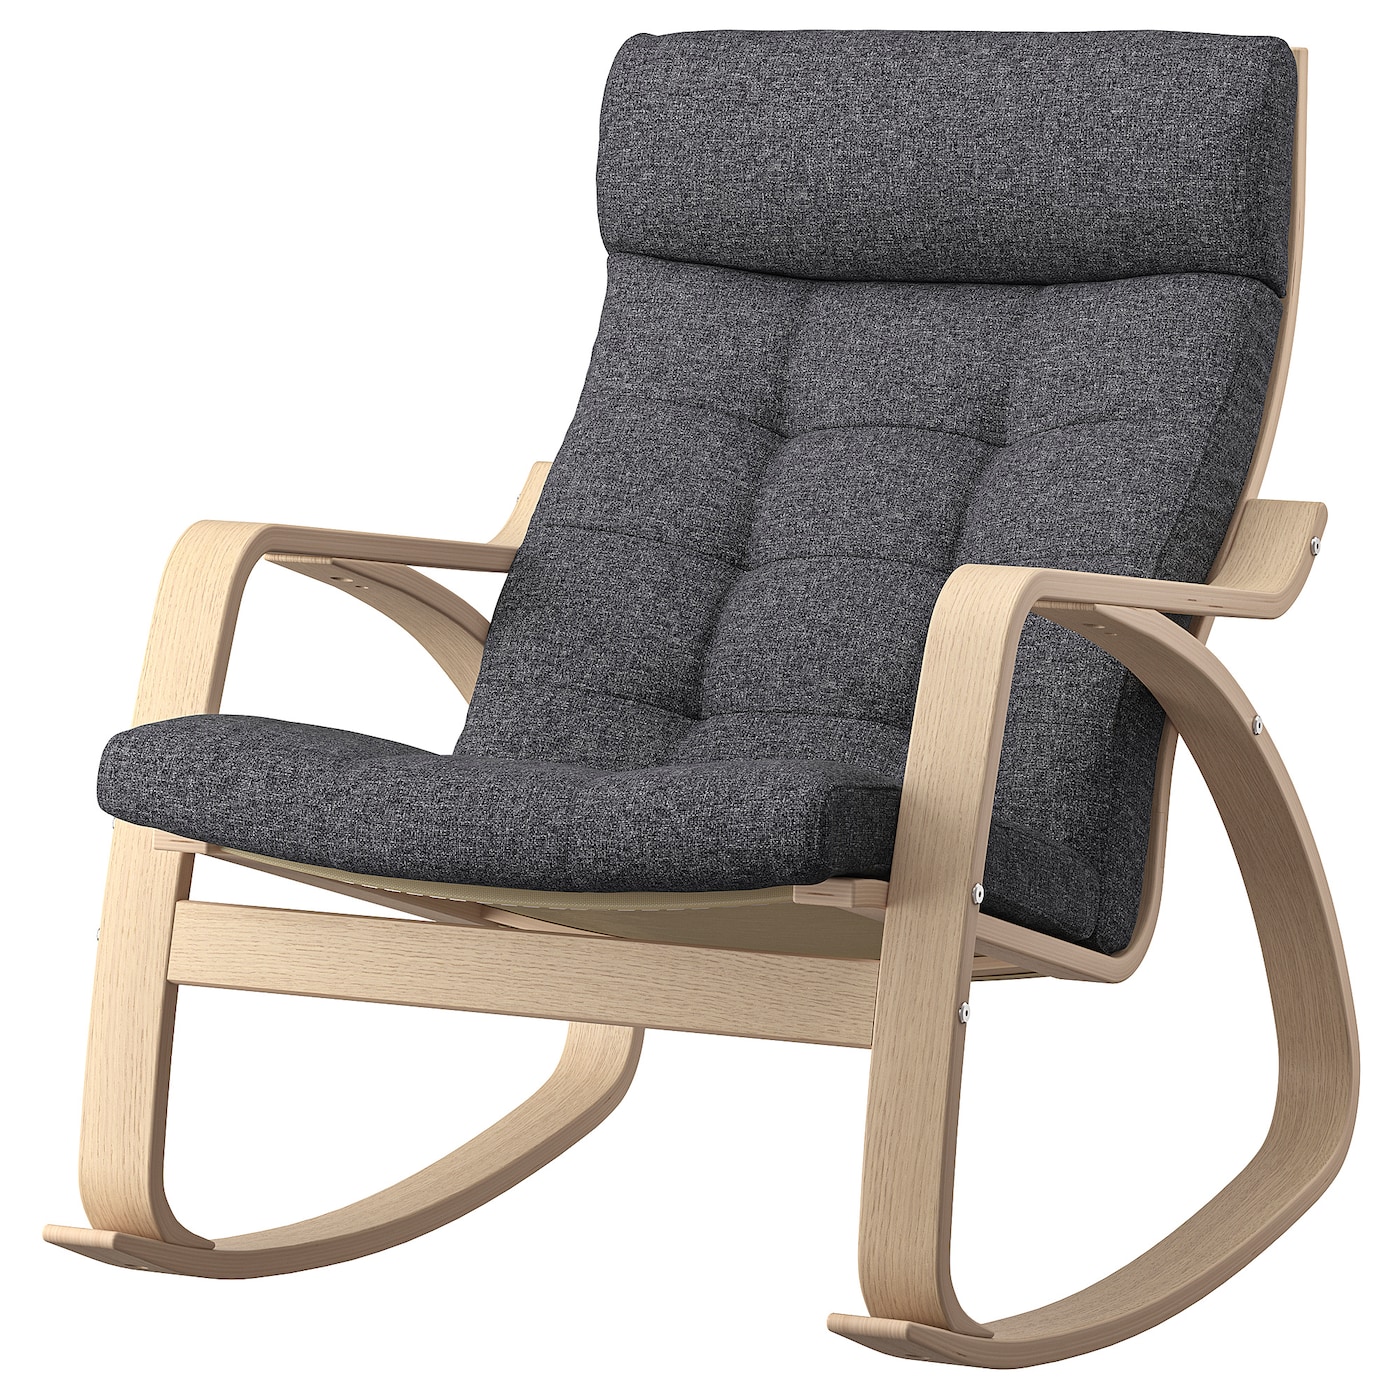 детское кресло качалка lazychild удобное кресло качалка с шейкером для сна детская кроватка качалка с колесами ПОЭНГ Кресло-качалка, дубовый шпон светлый/Гуннаред темно-серый POÄNG IKEA